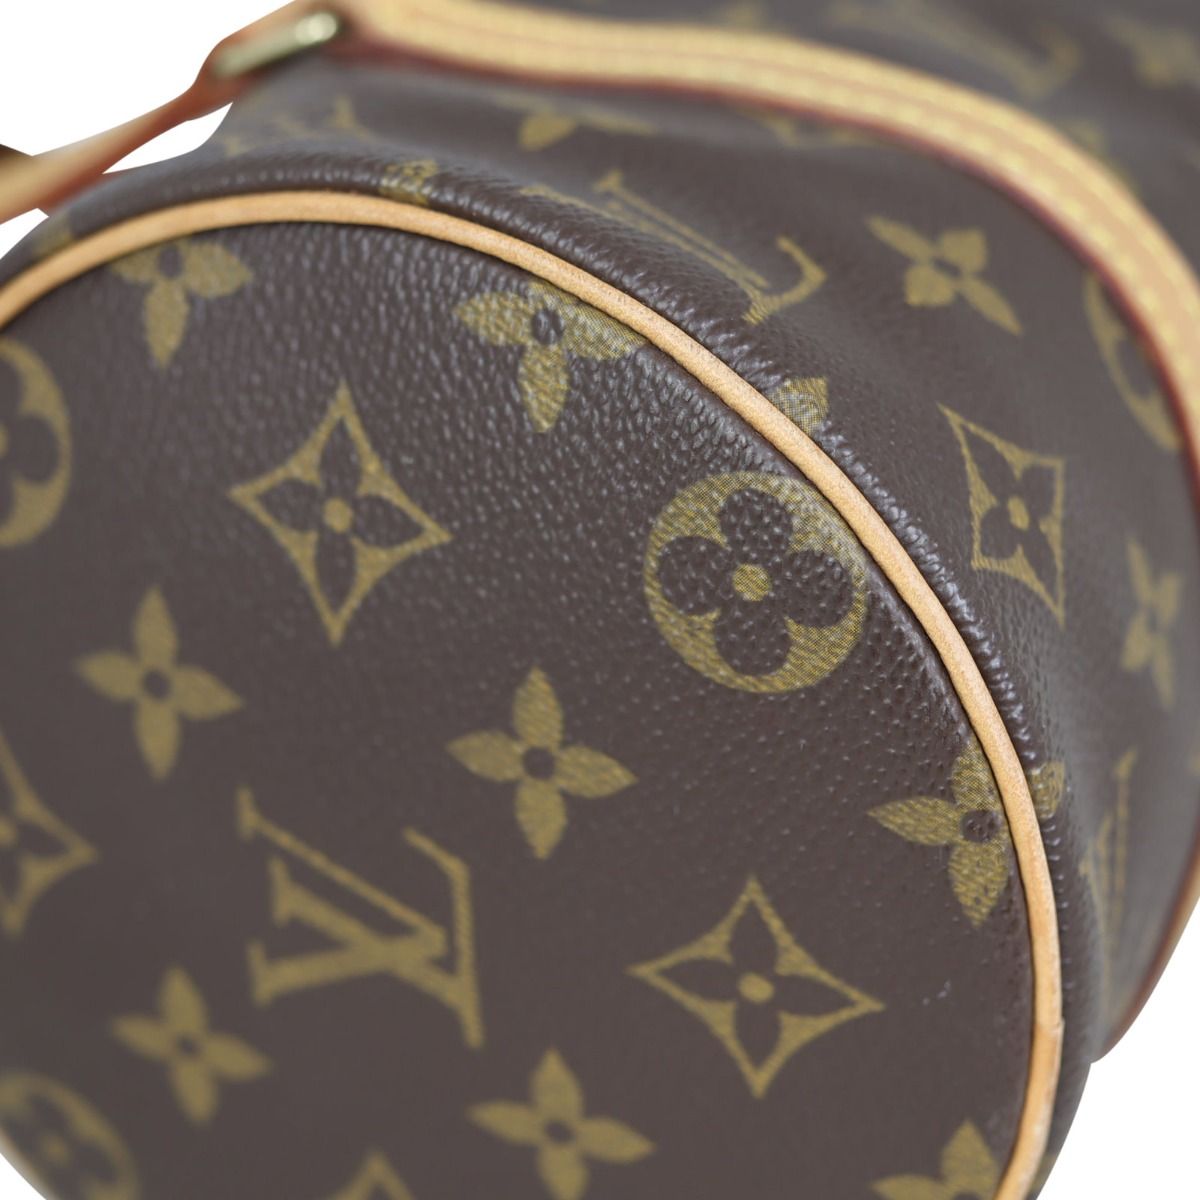 Shop Twiggy's look with the Louis Vuitton Monogram Papillon bag